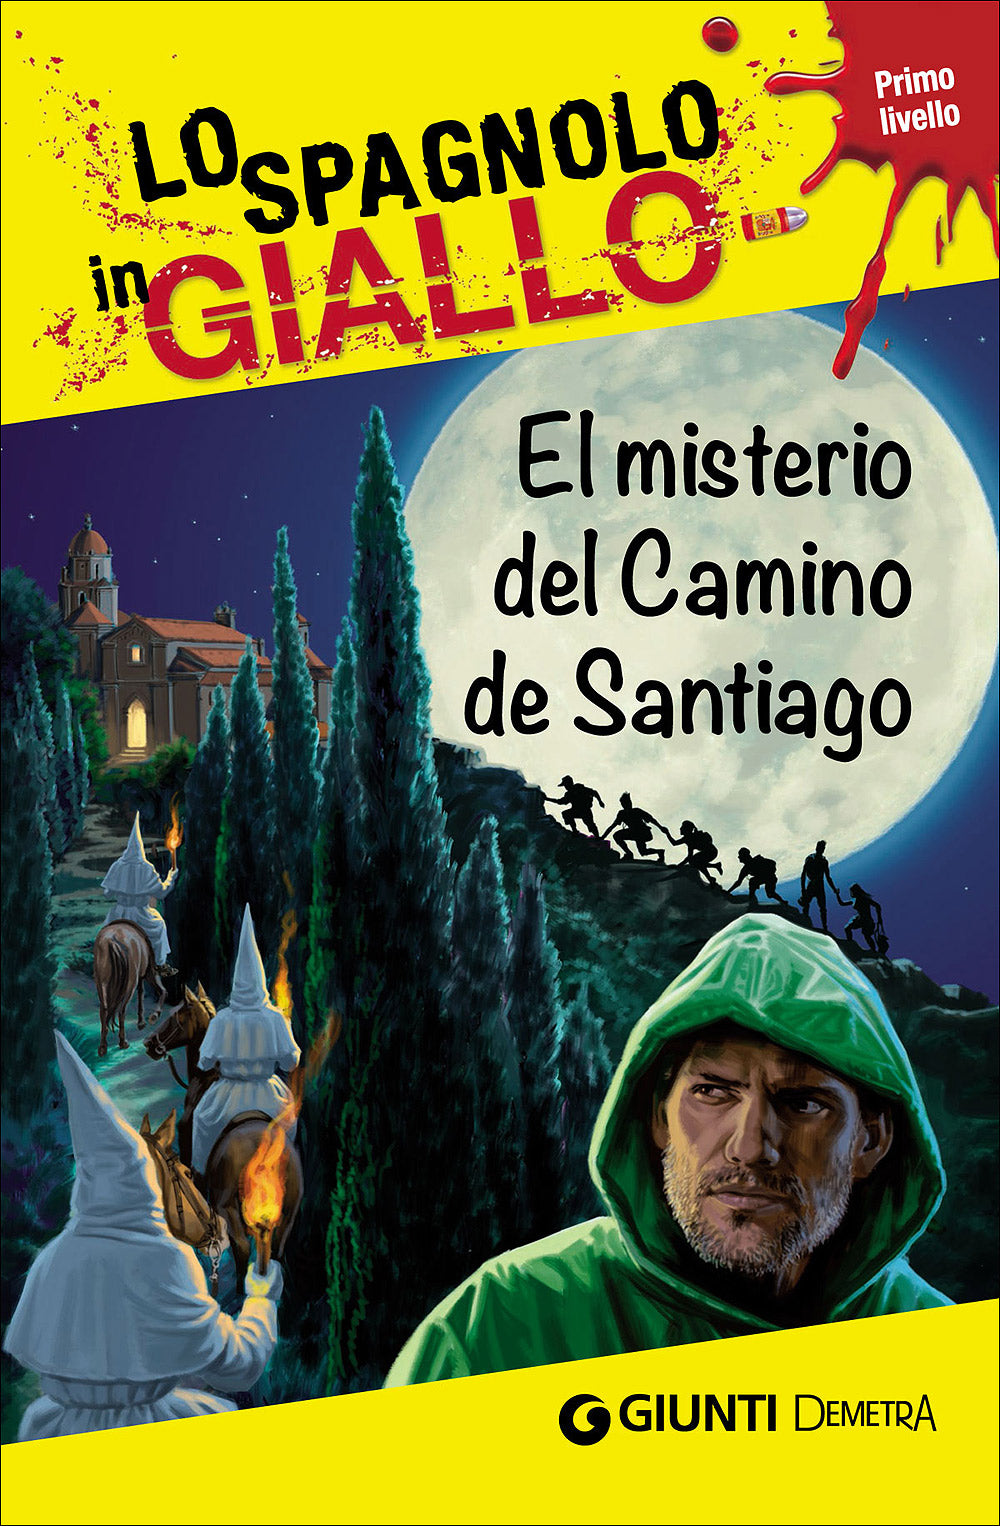 El misterio del Camino de Santiago. I racconti che migliorano il tuo spagnolo - Primo livello